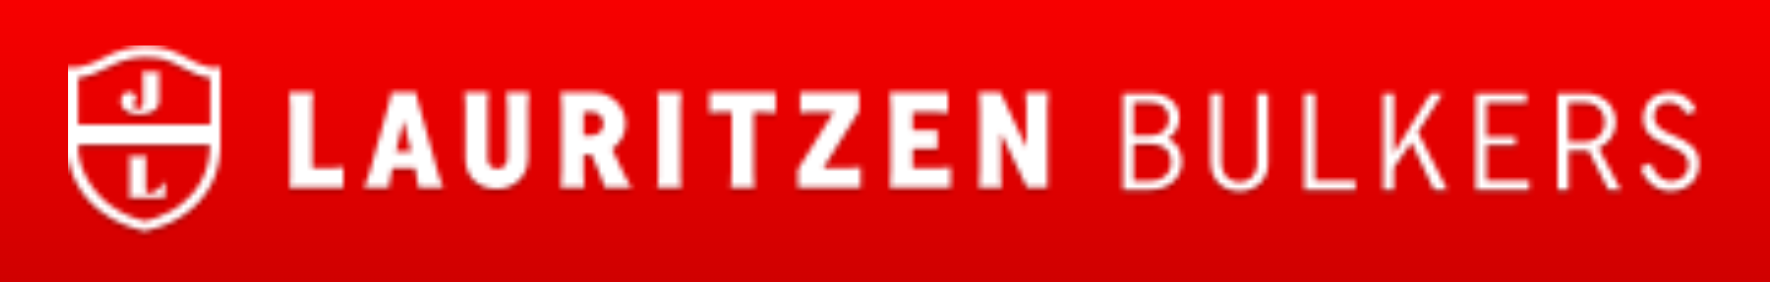 Lauritzen Bulkers Logo